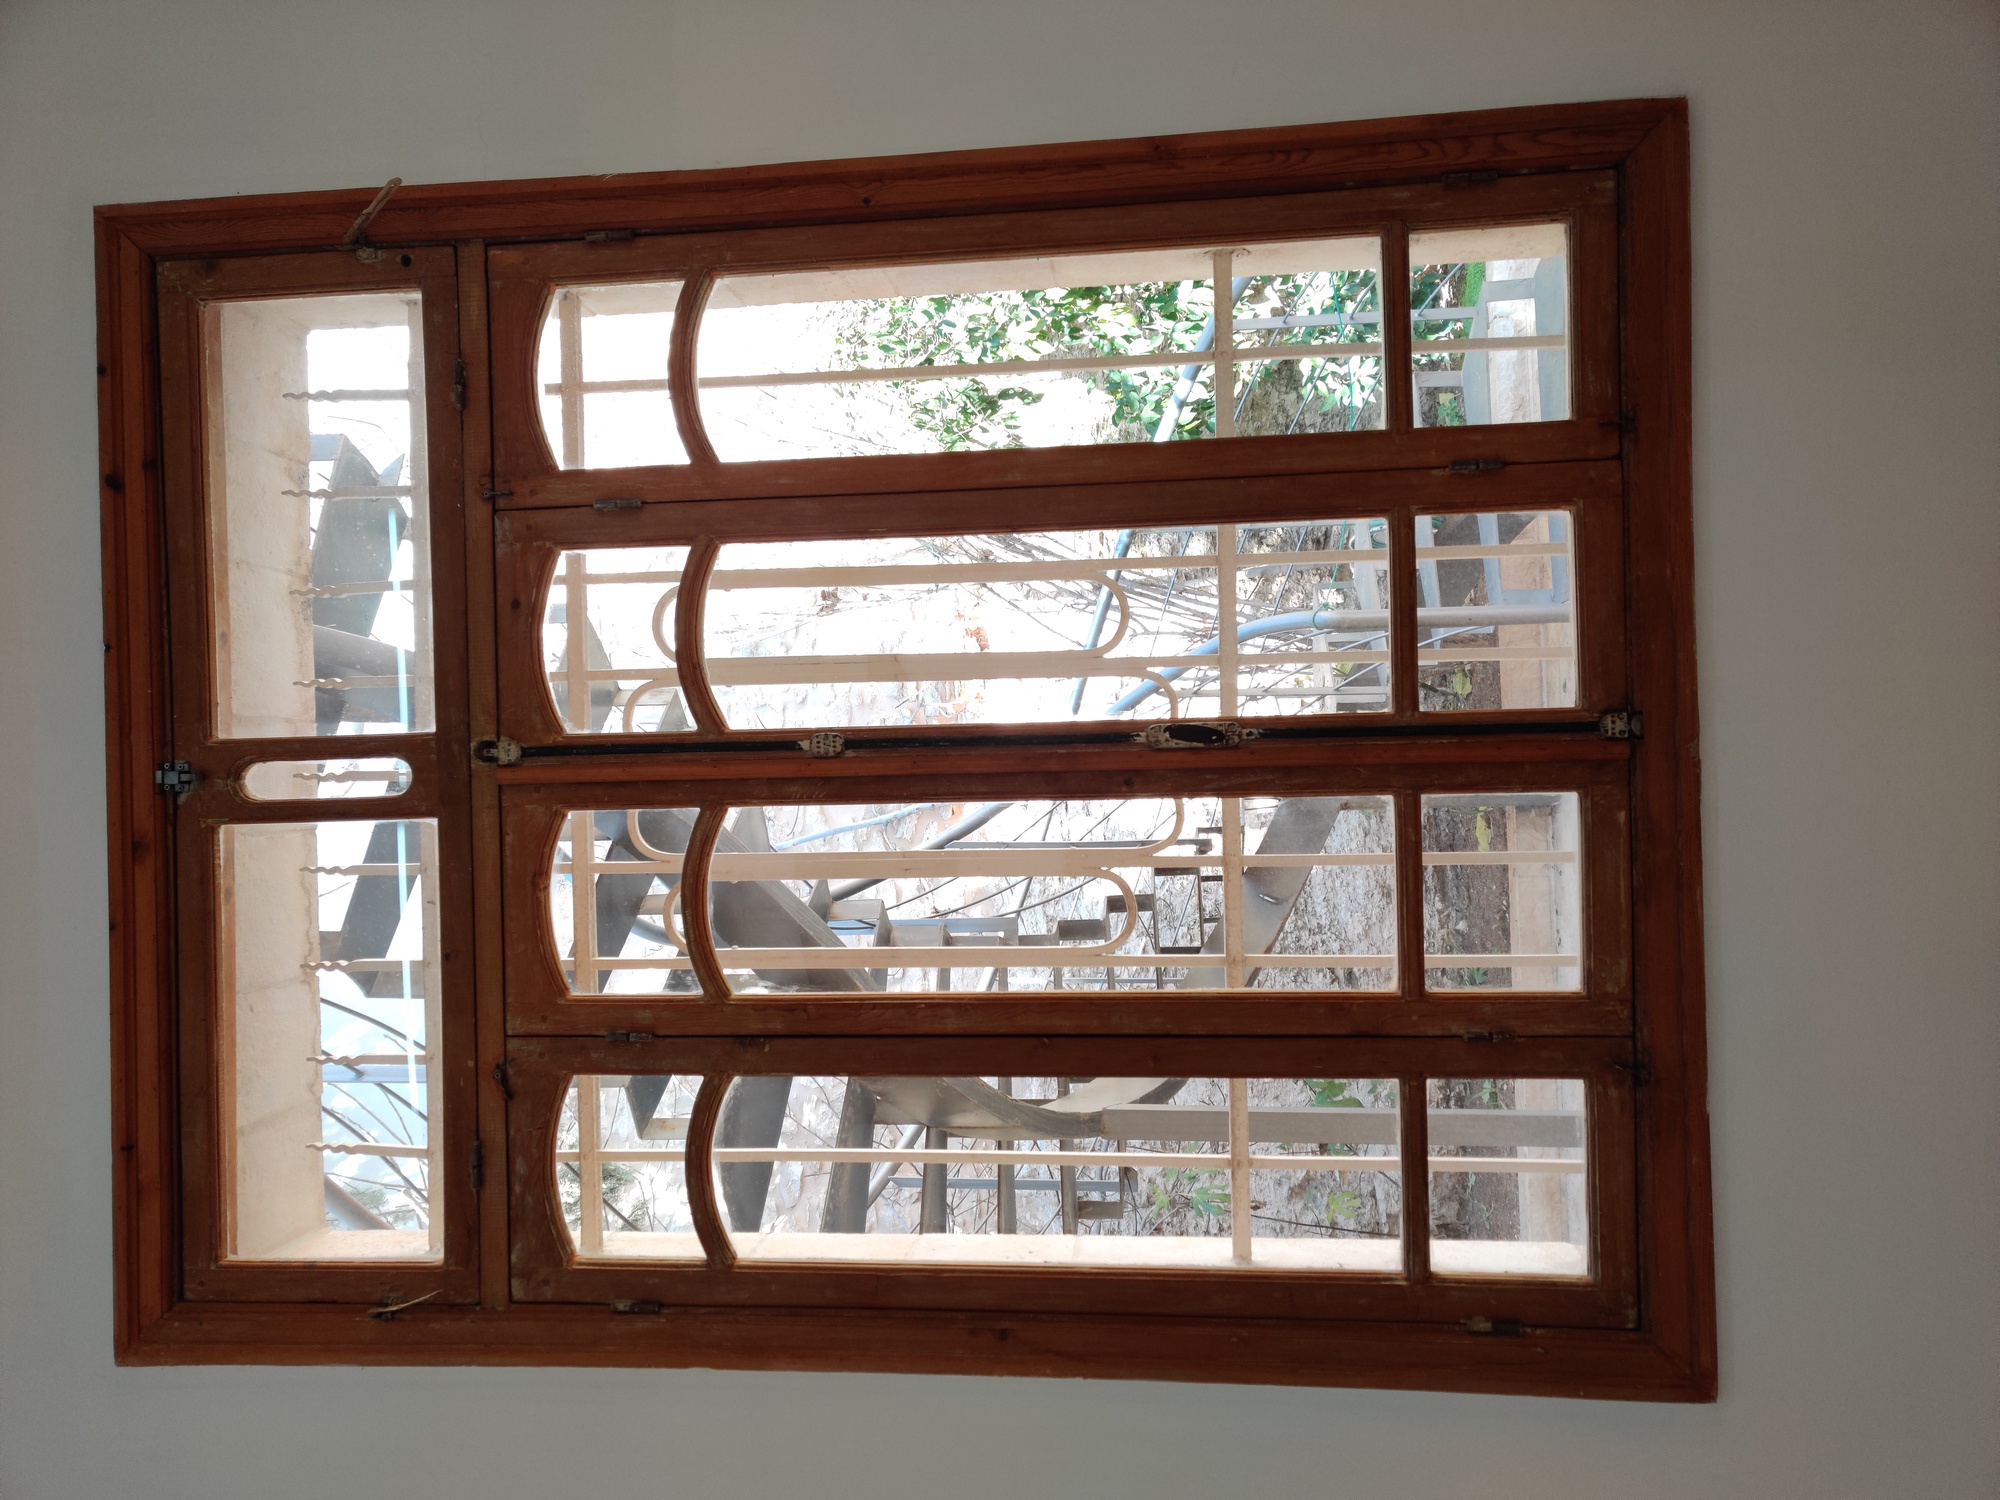 Darat al Funun - Interior view of a window